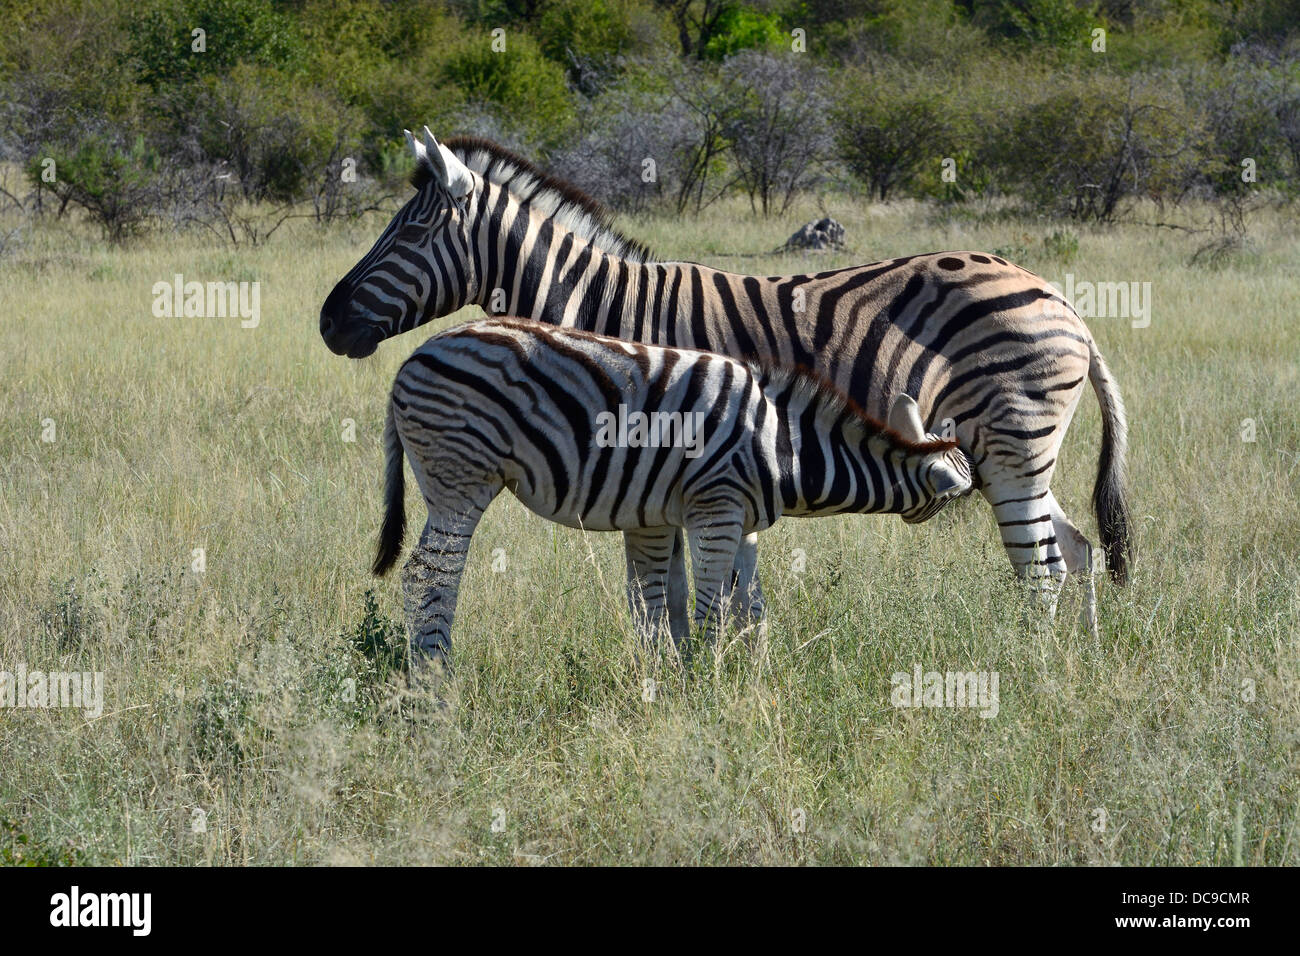 Plains Zebra or Burchell's Zebra (Equus quagga) suckling a foal Stock Photo